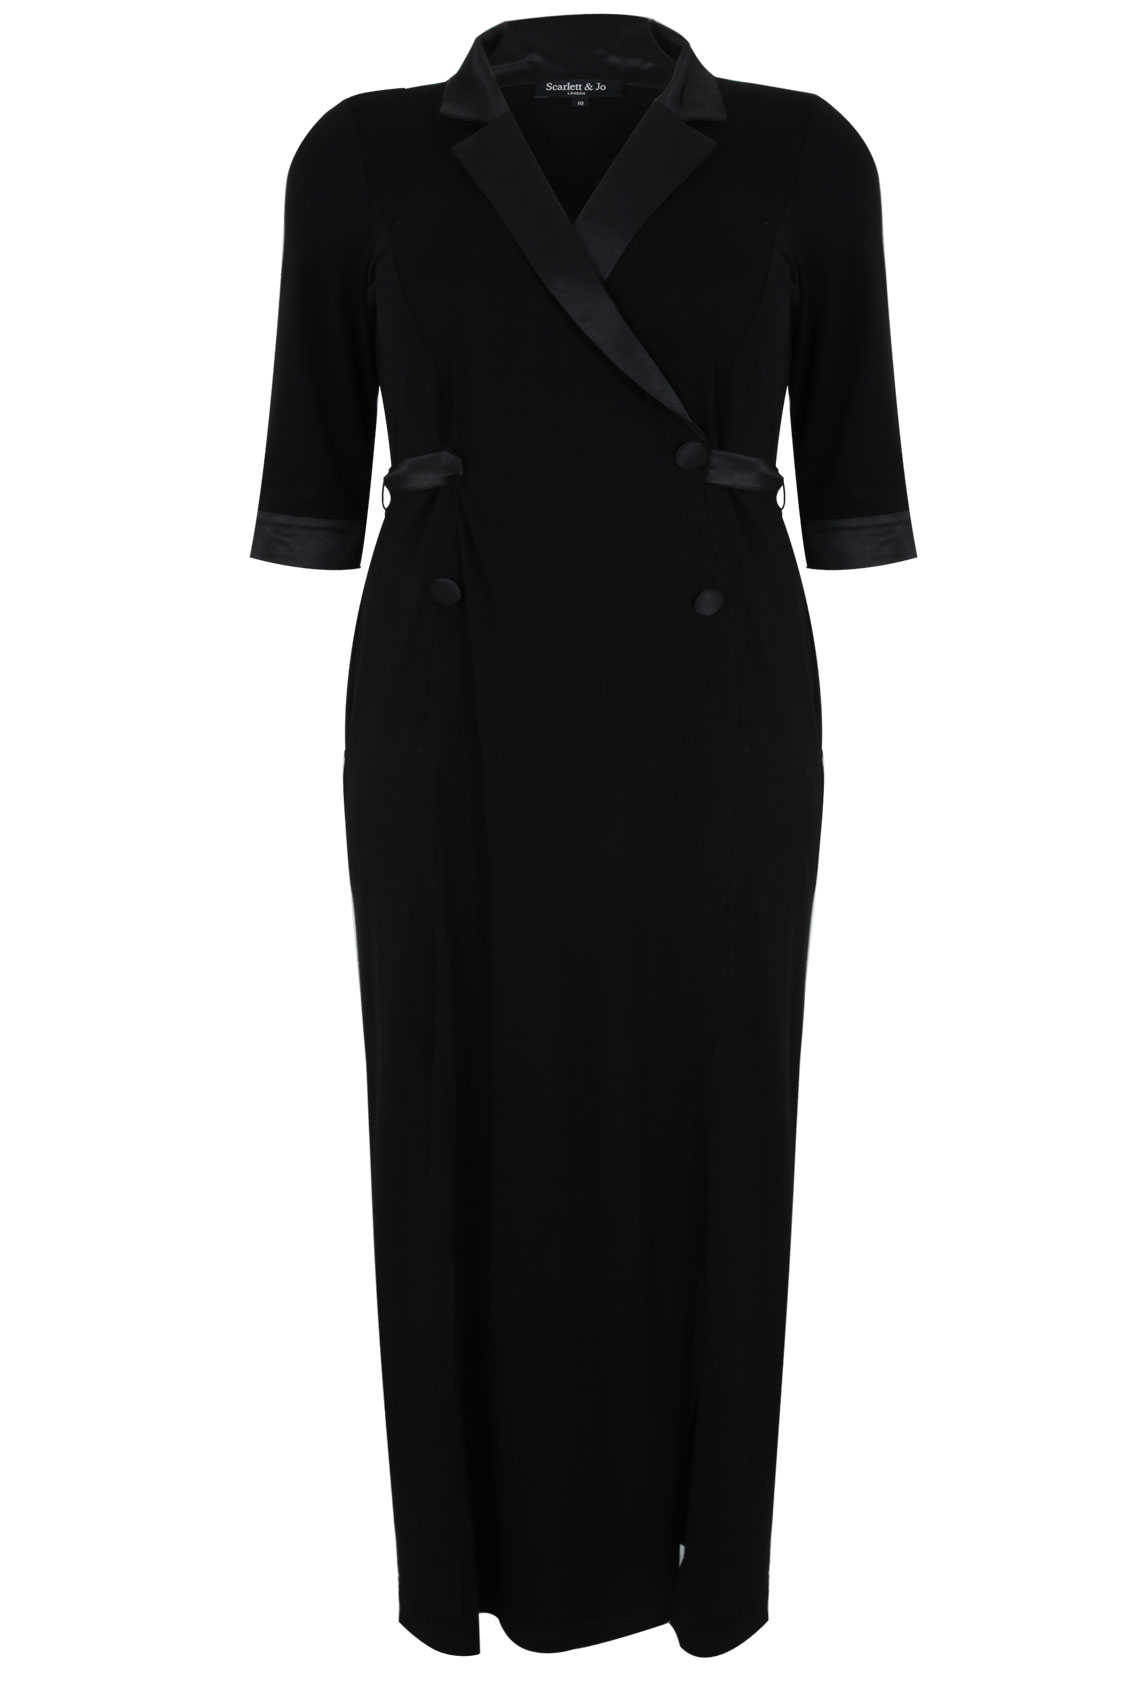 SCARLETT & JO Black Tuxedo Jersey Maxi Dress plus size 16-32